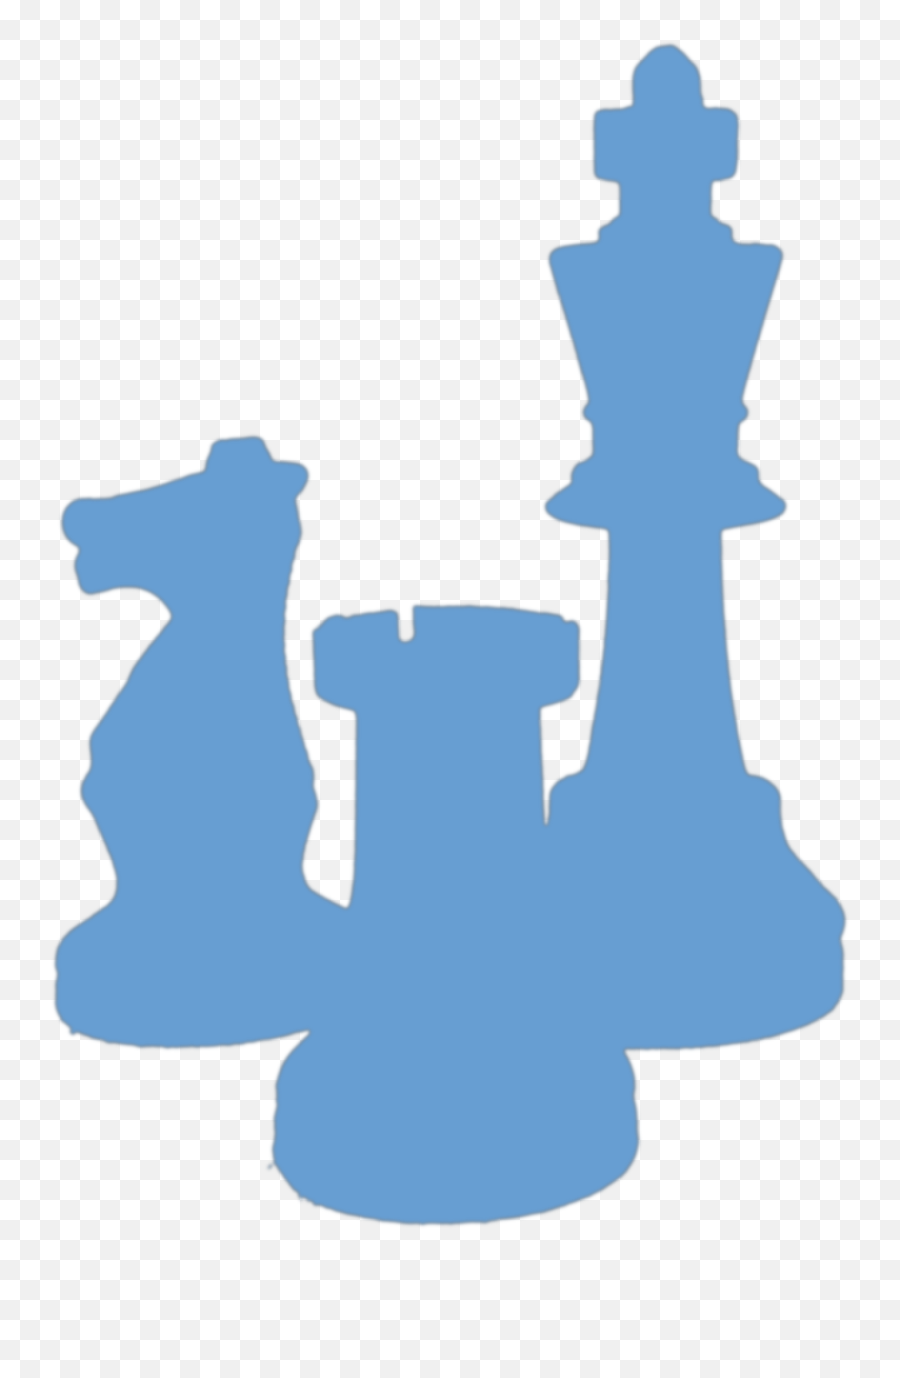 Chesspiecesicon - Pawn Rook Knight Bishop Queen King Bishop Rook Knight Pawn Png,Chess Knight Icon